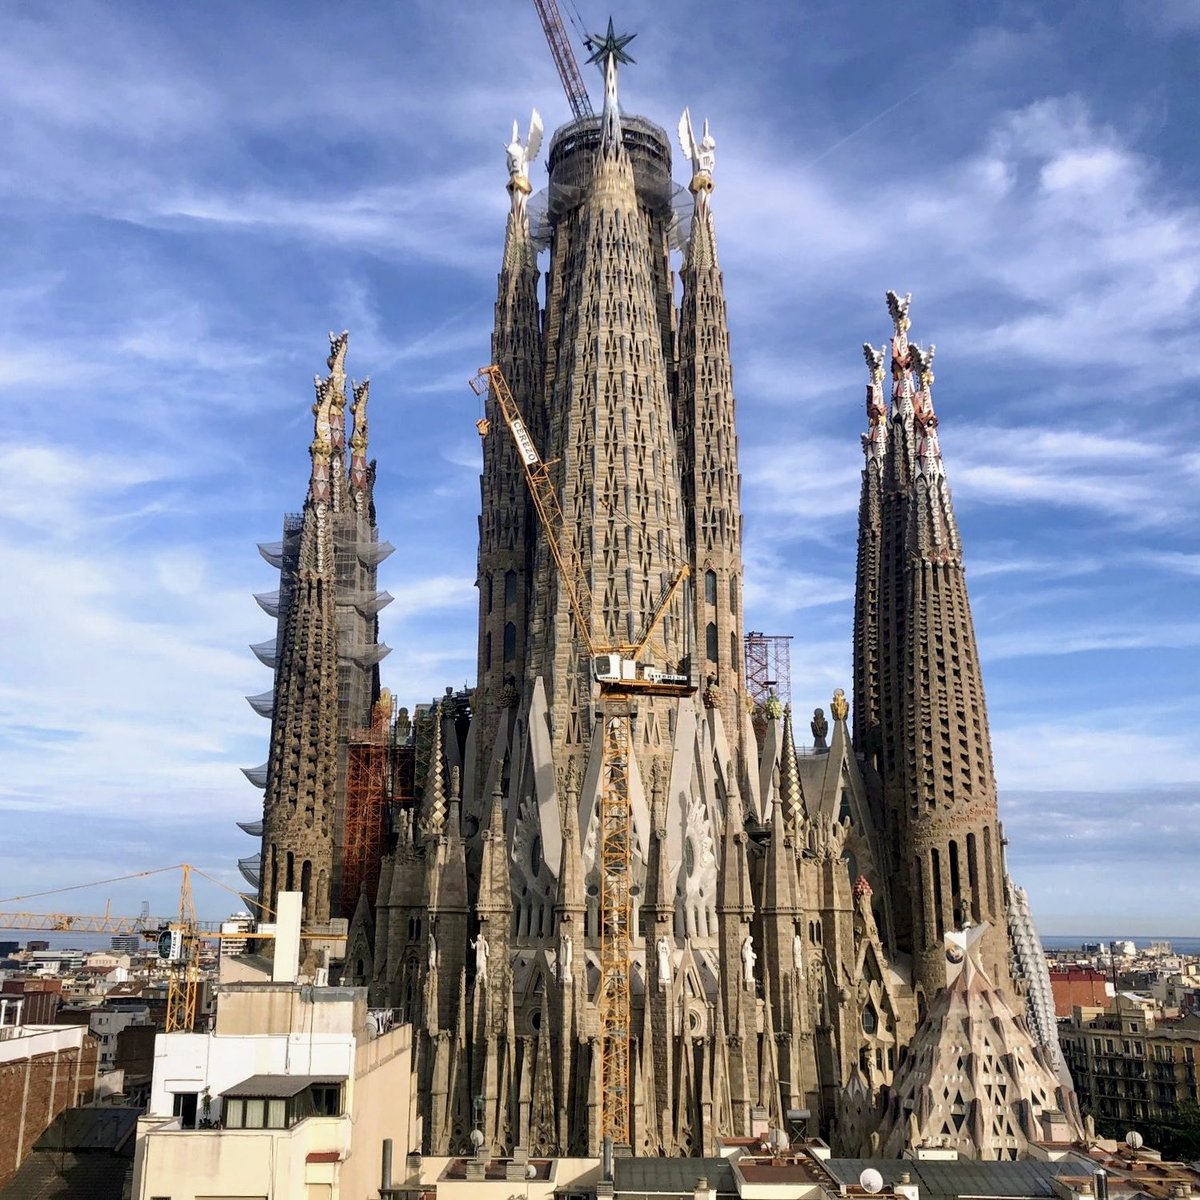 5月12日現在のサグラダファミリア
2026年に完成予定のメインタワー
イエスの塔が少し高くなってきました！

#サグラダファミリア #イエスの塔
#マリアの塔 #福音書記者の塔
#sagradafamilia #バルセロナ
#スペイン旅行 #バルセロナ旅行
#スペイン観光 #バルセロナ観光
#バルセロナ直行便 #世界遺産